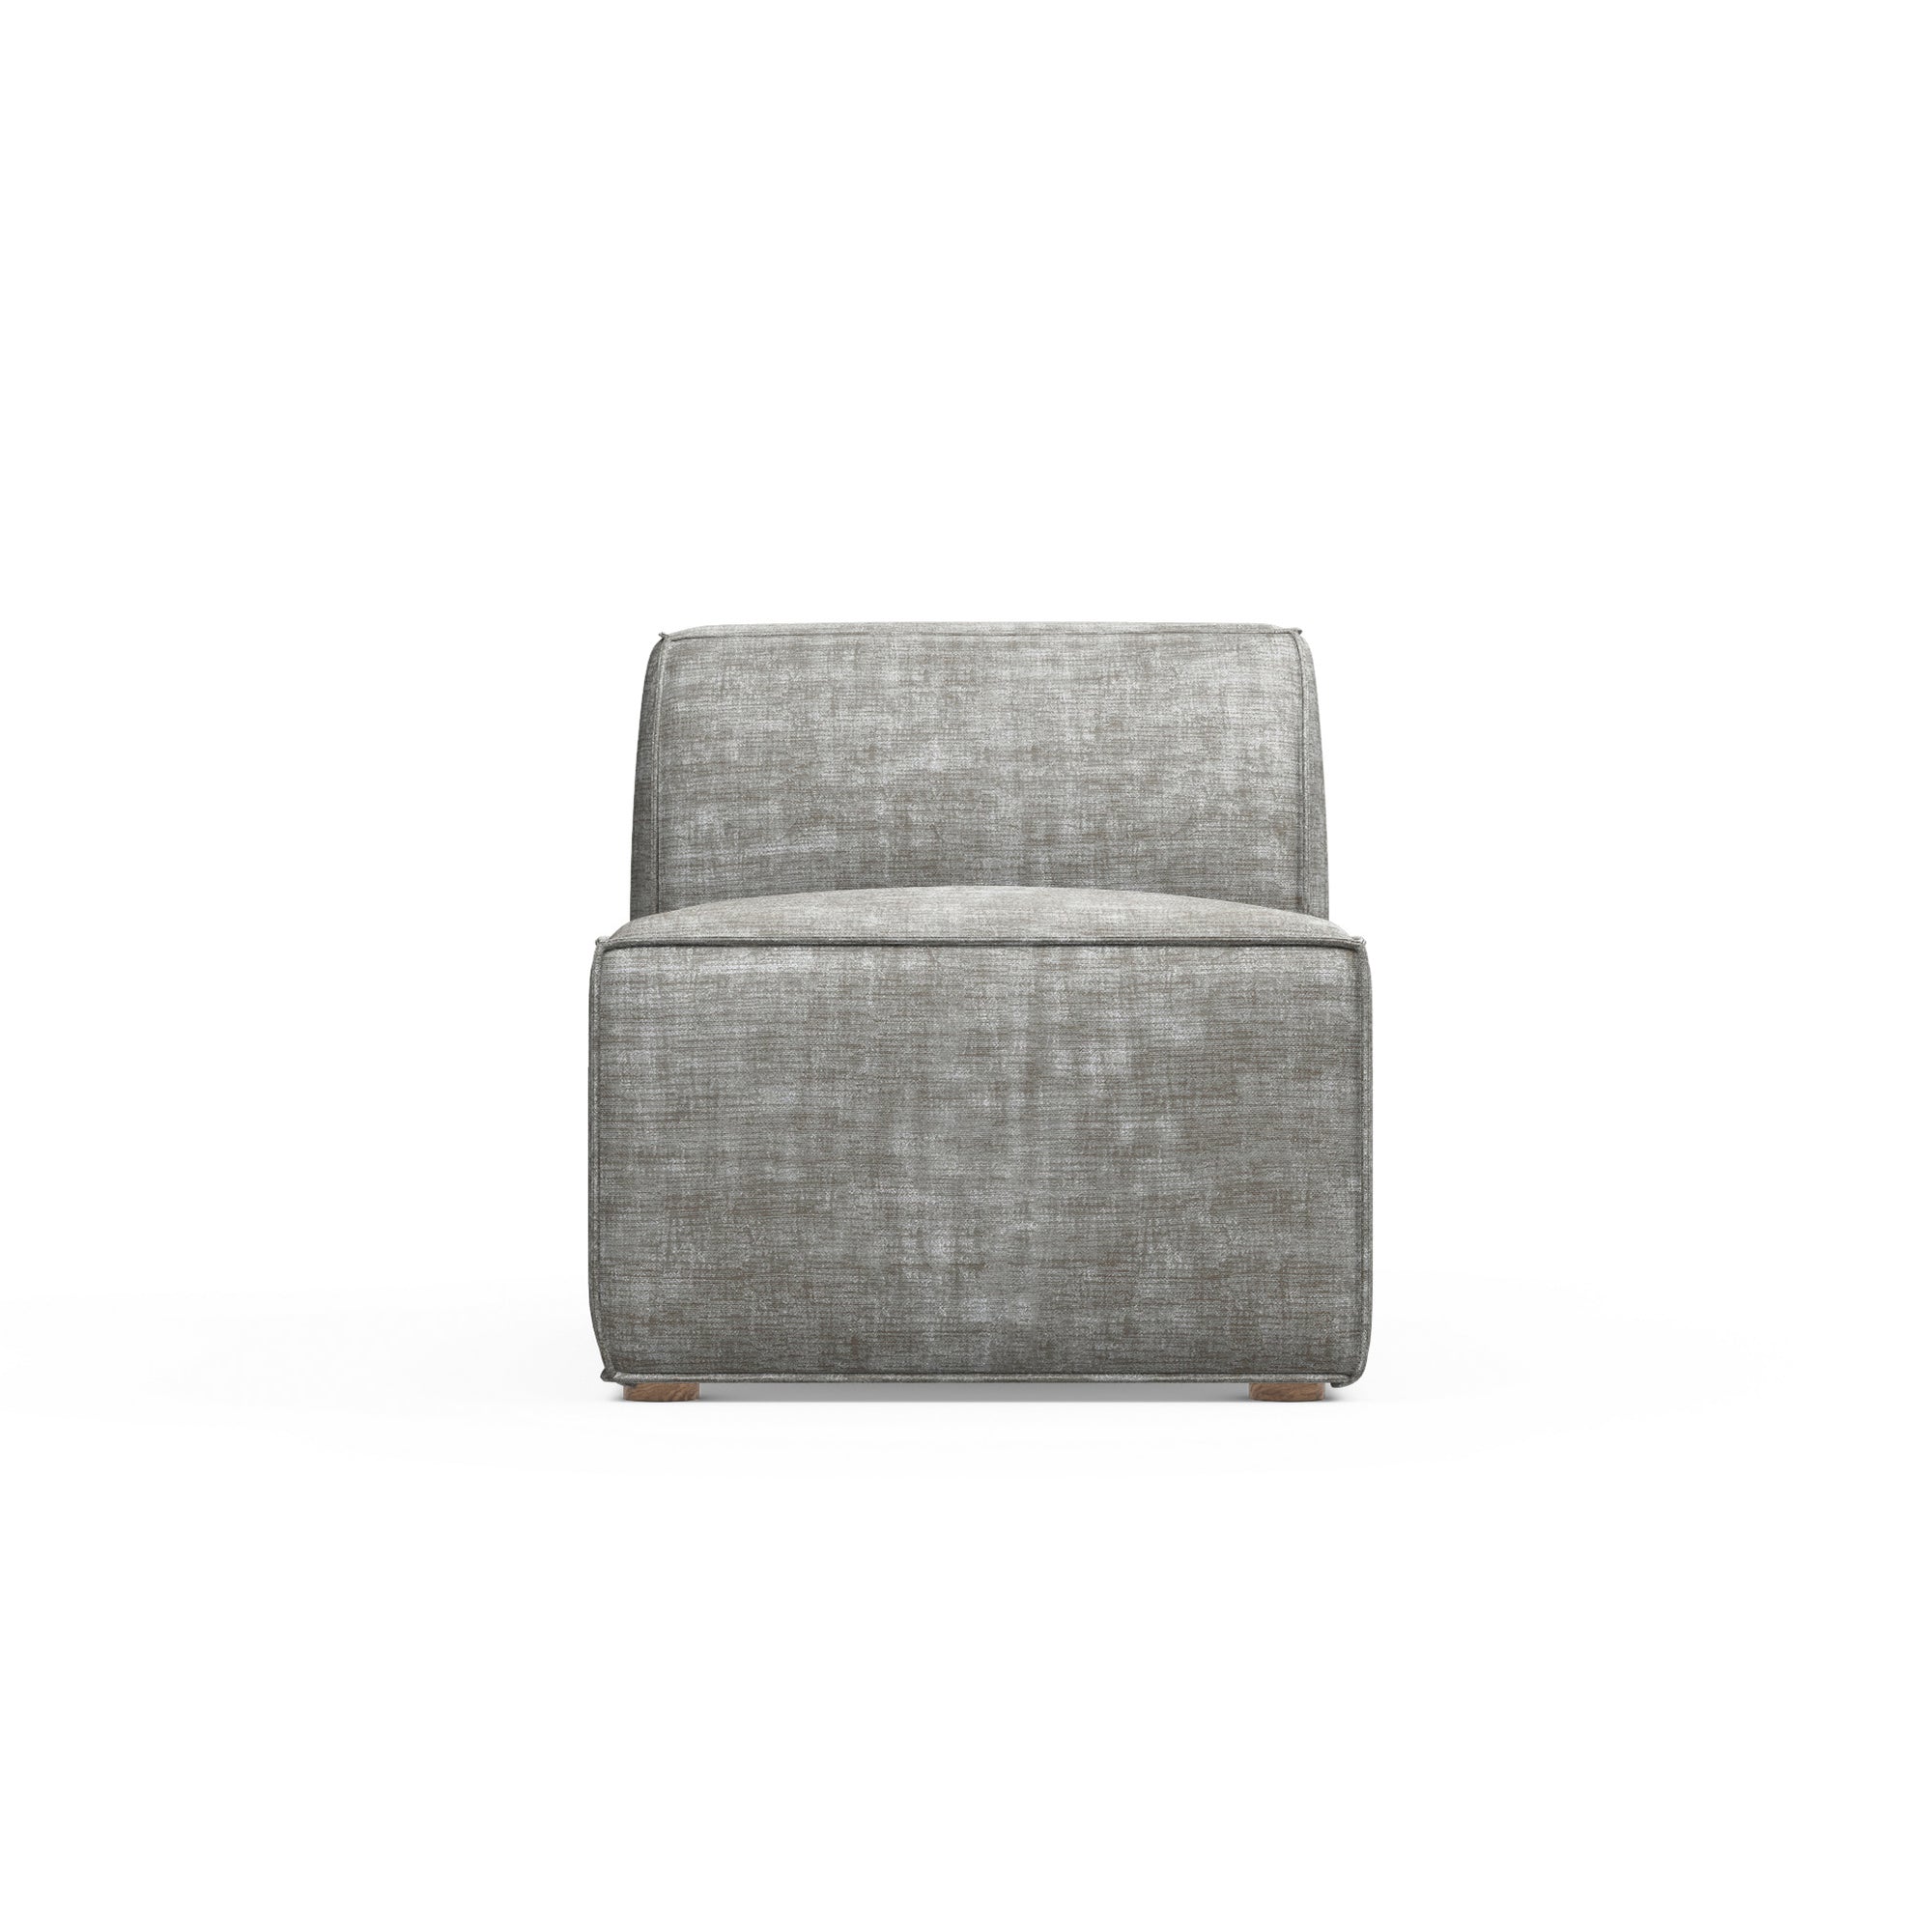 Varick Armless Chair - Silver Streak Crushed Velvet